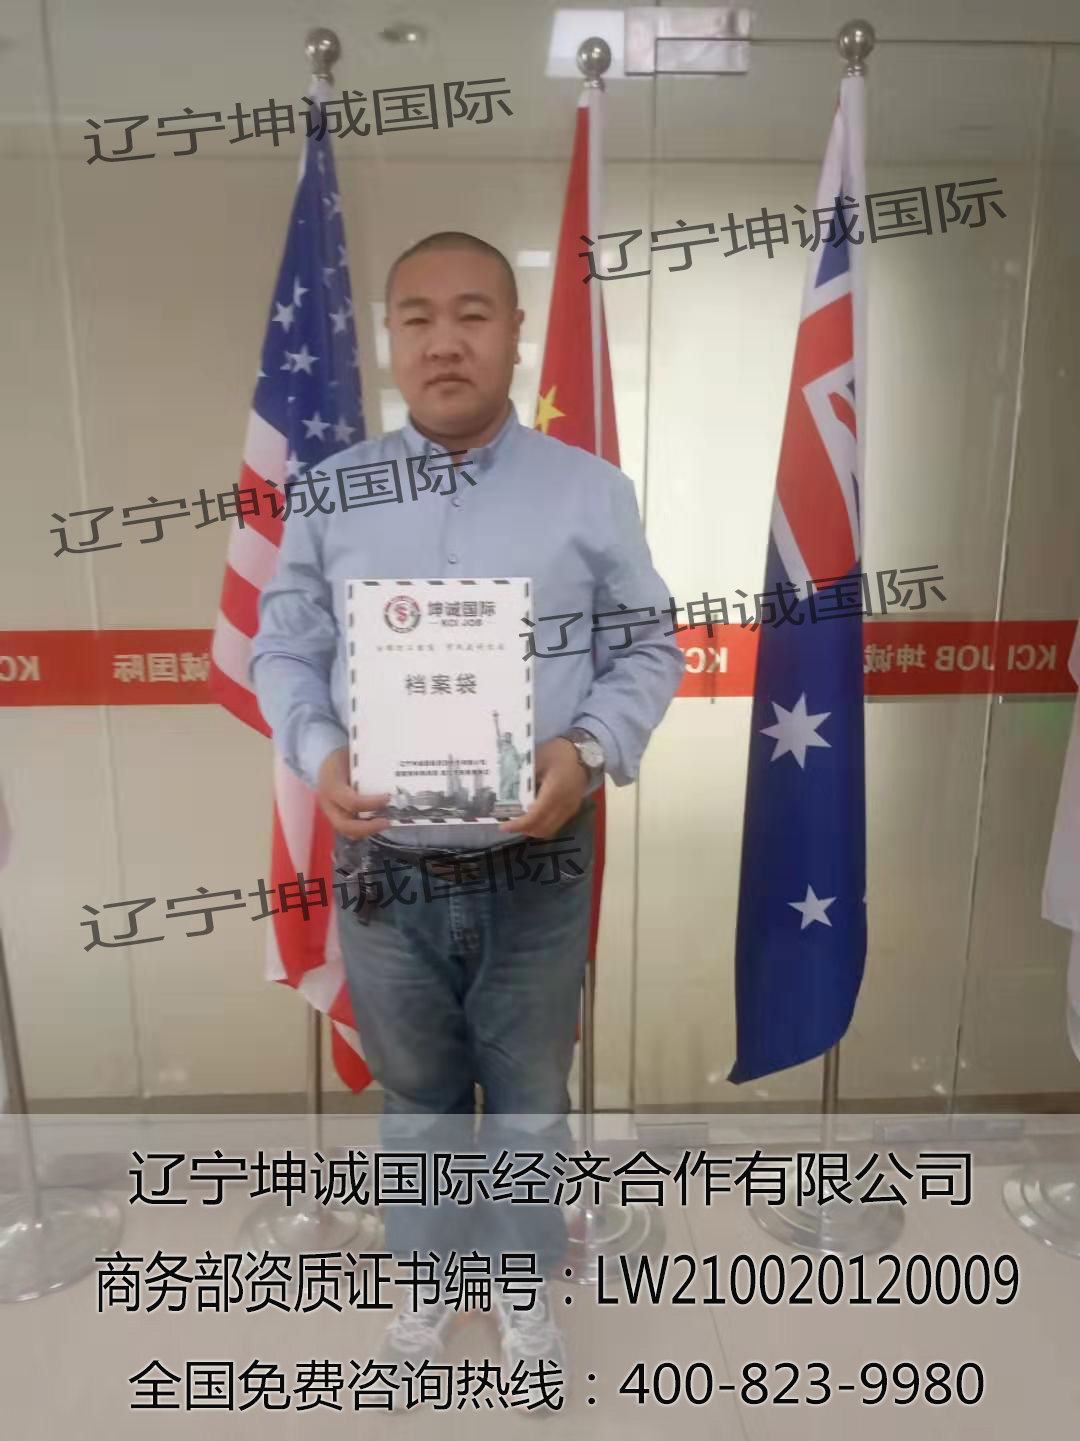 恭喜苏先生海外劳务项目报名成功